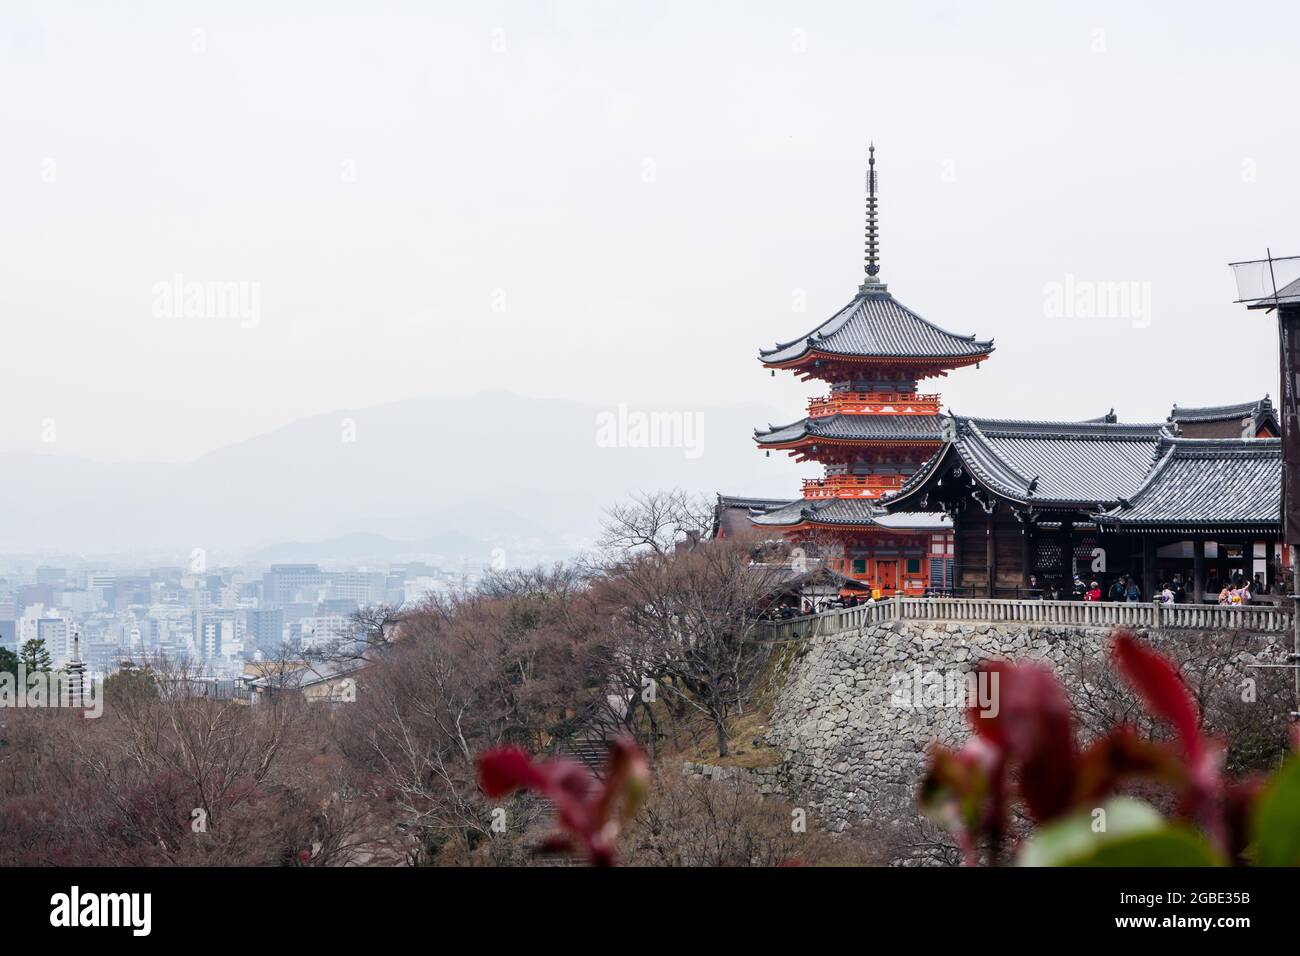 Kyoto, Japan – 17. Dezember 2017: Das Gelände des Kiyomizu-dera Buddhistischen Tempels und die Skyline von Kyoto Stockfoto